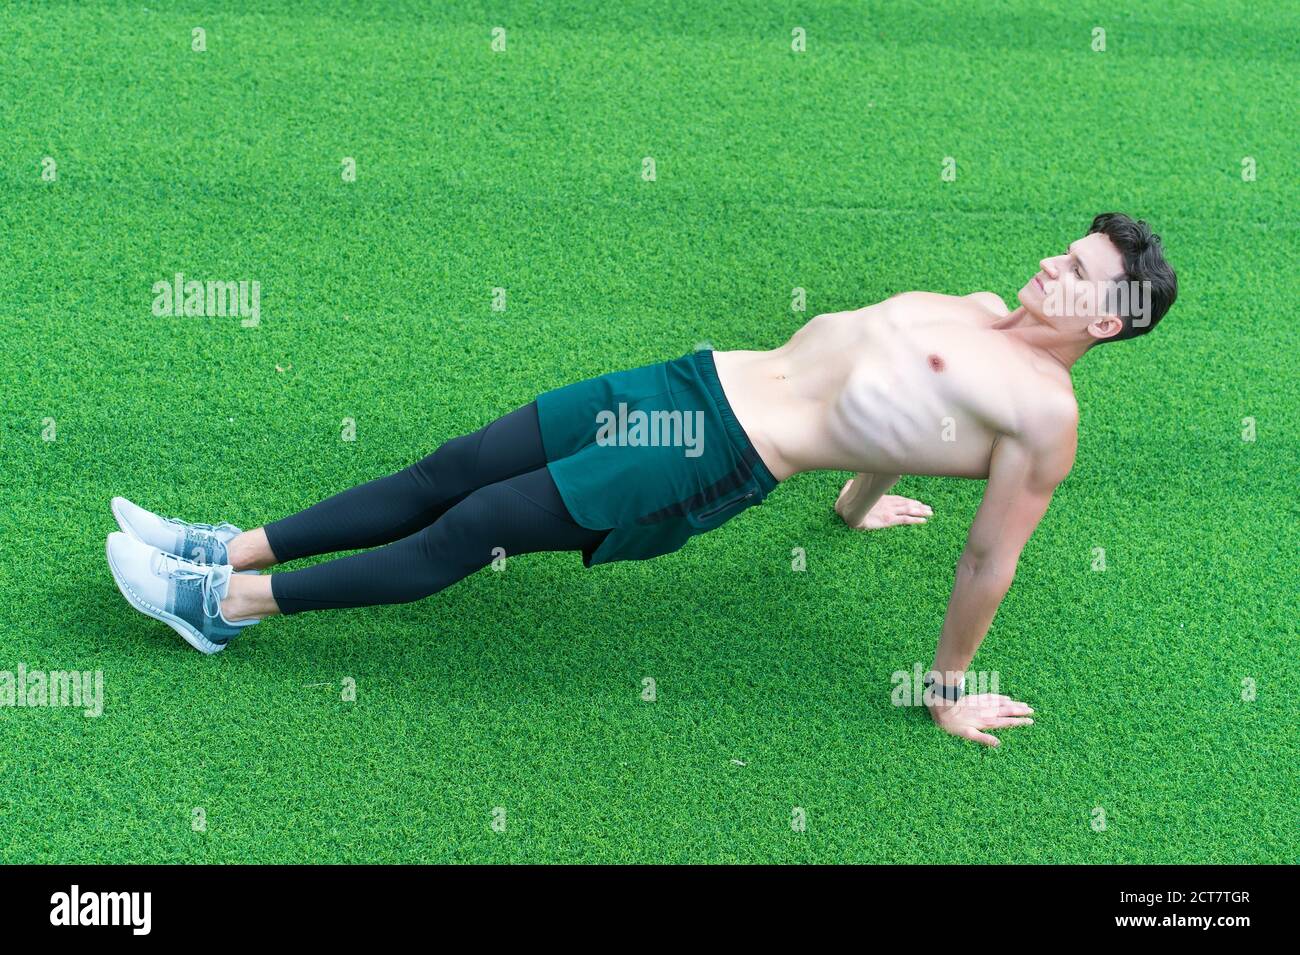 La plancha invertida ayuda a fortalecer la parte inferior de la espalda, el  hombre haciendo ejercicio al aire libre Fotografía de stock - Alamy